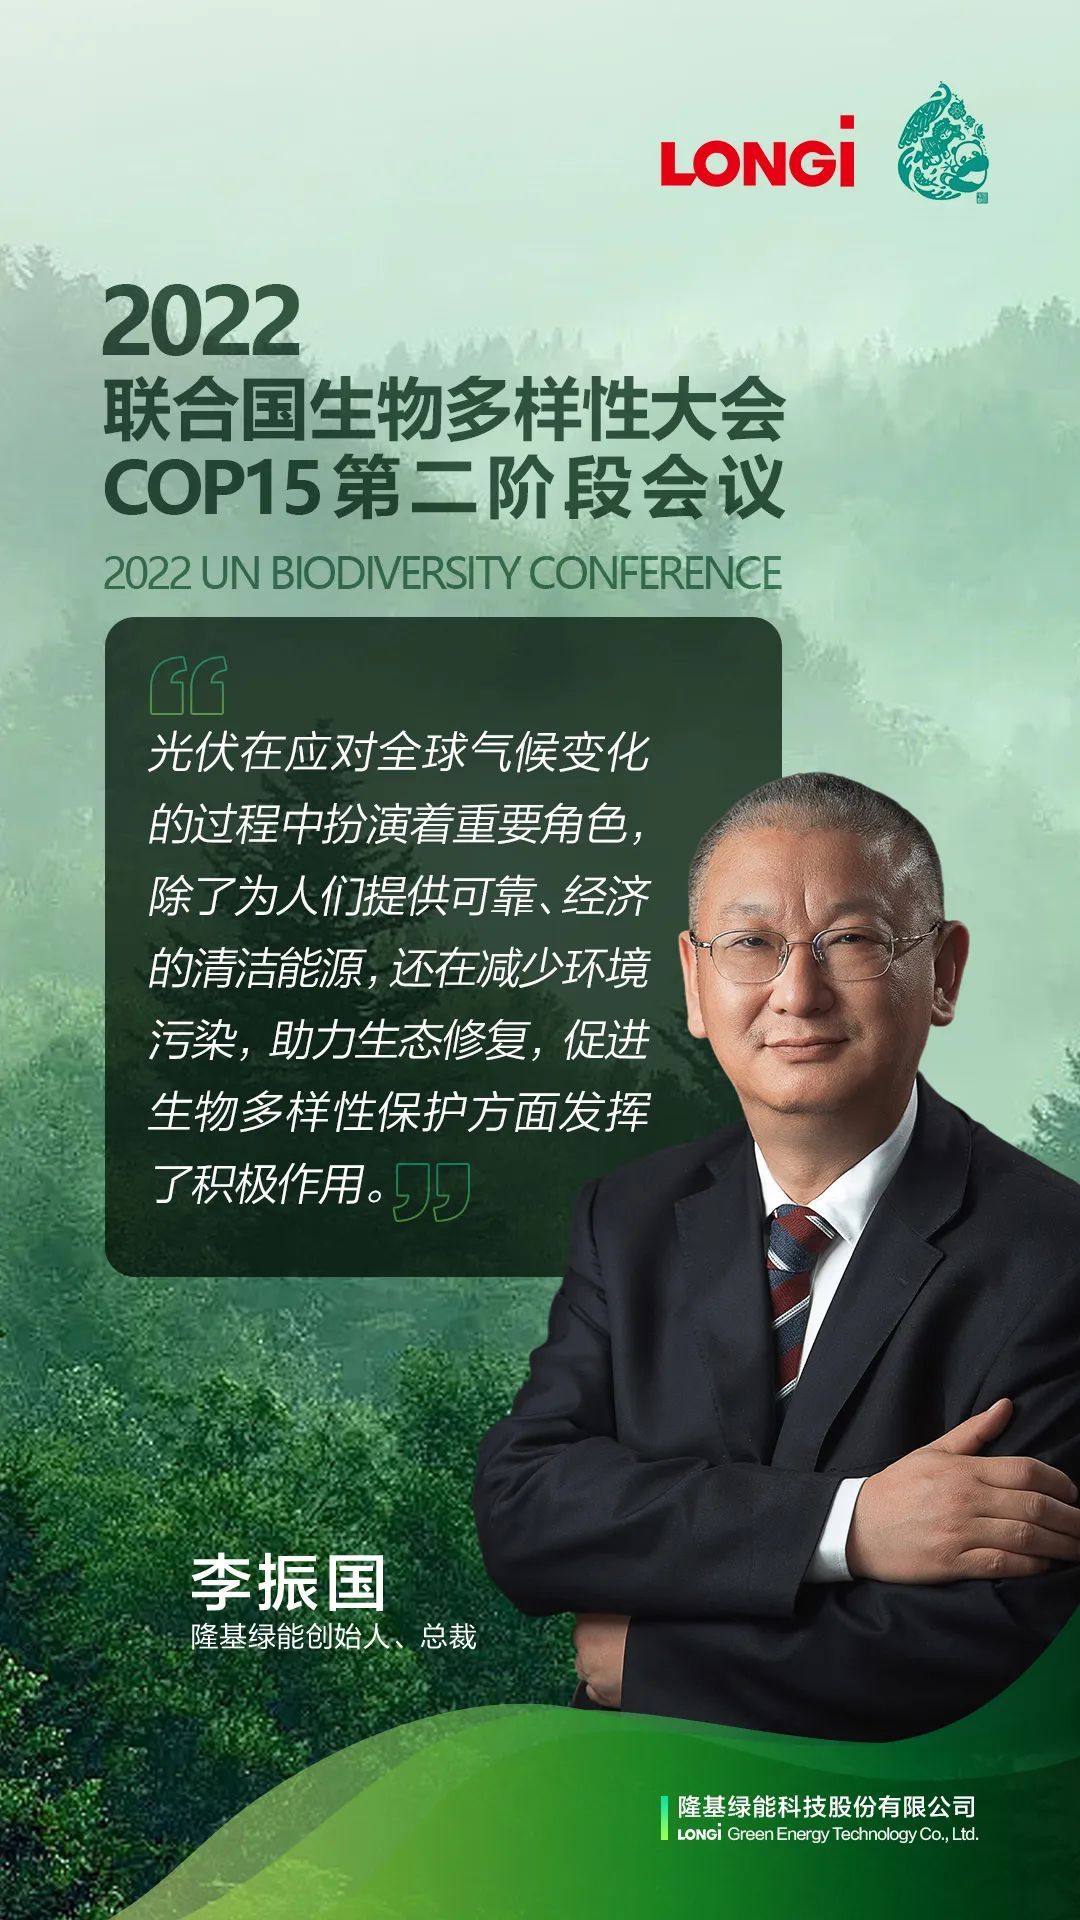 隆基绿能创始人、总裁李振国应邀出席COP15第二阶段会议